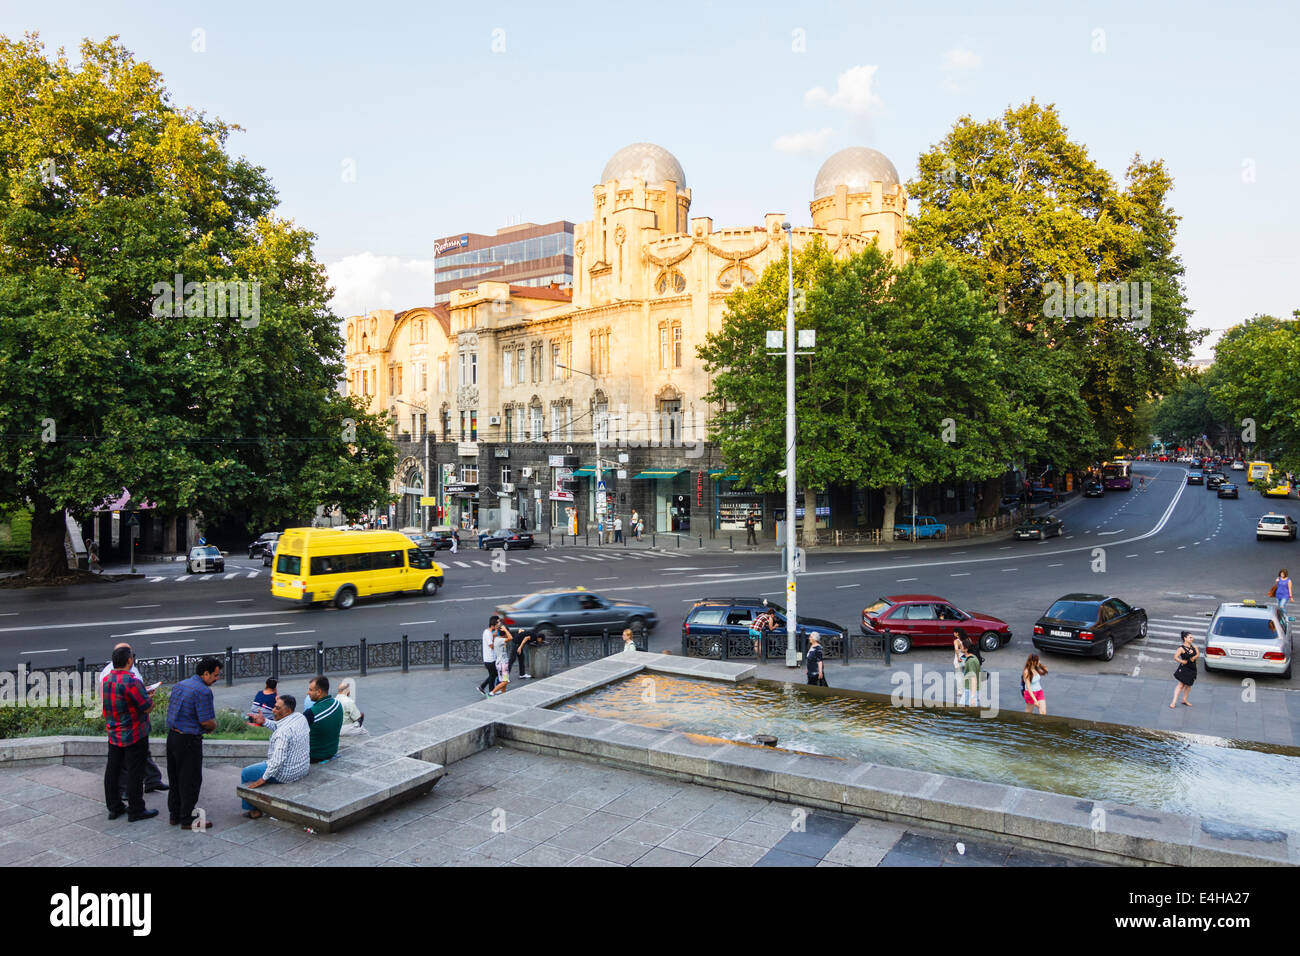 L'Avenue Rustaveli et carré, Tbilissi, Géorgie Banque D'Images